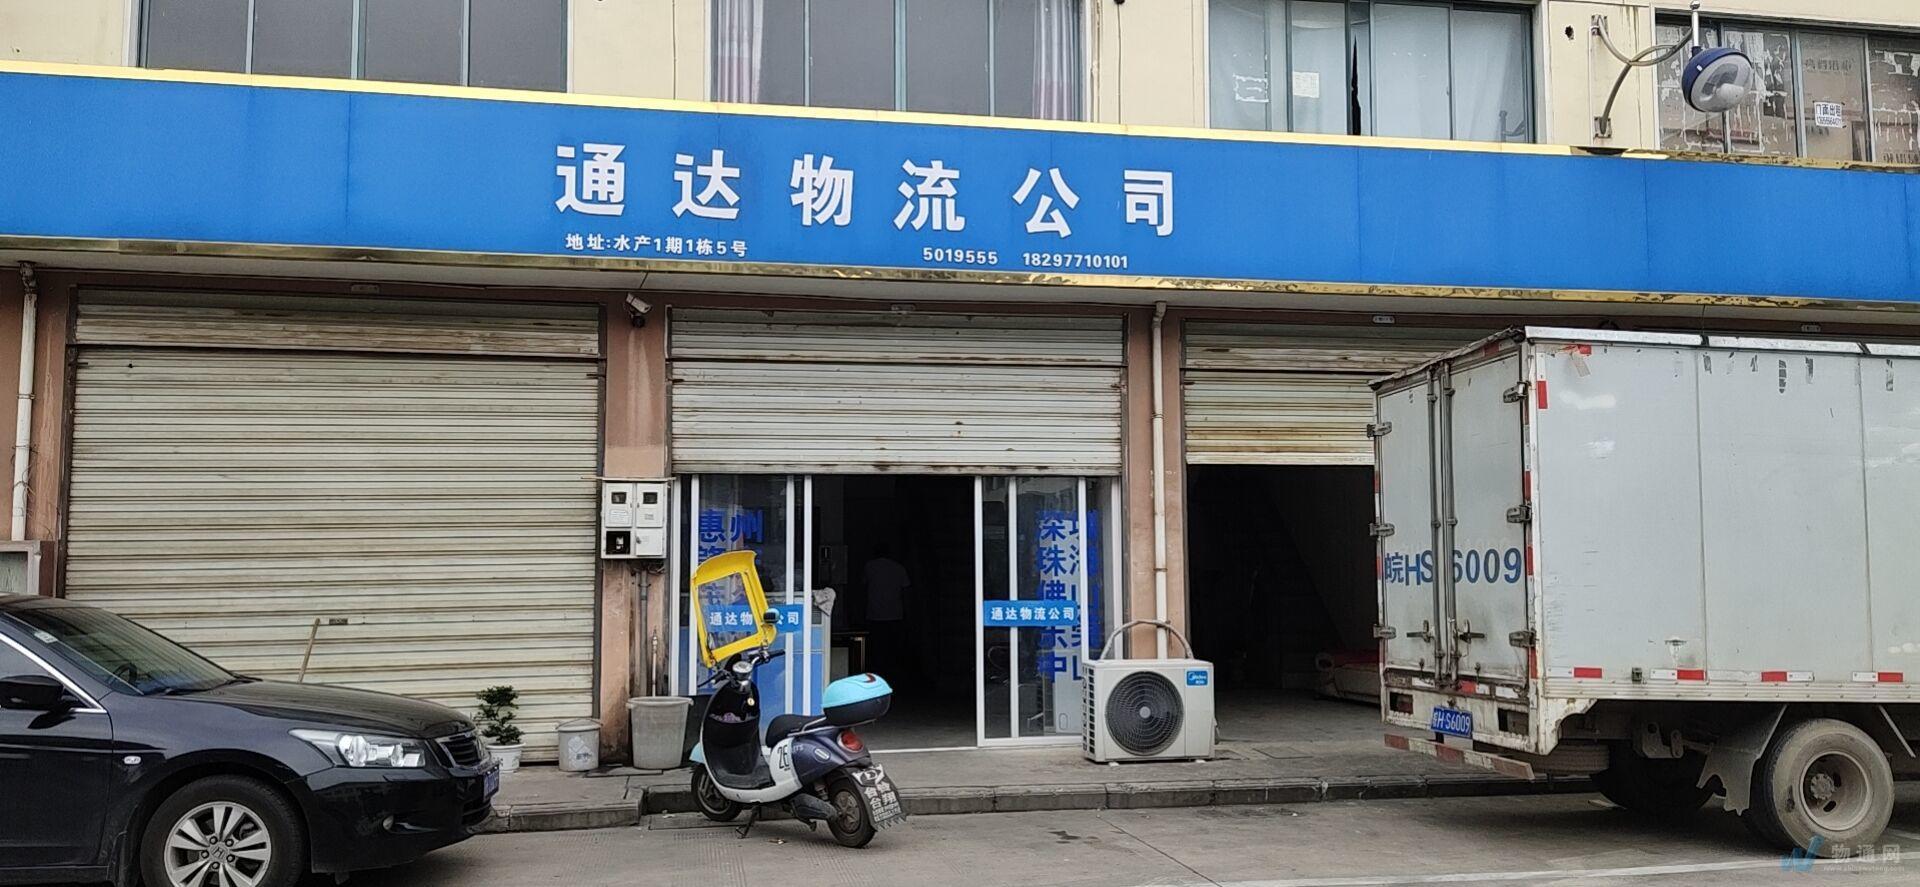 安慶市通達物流有限責任公司門頭照